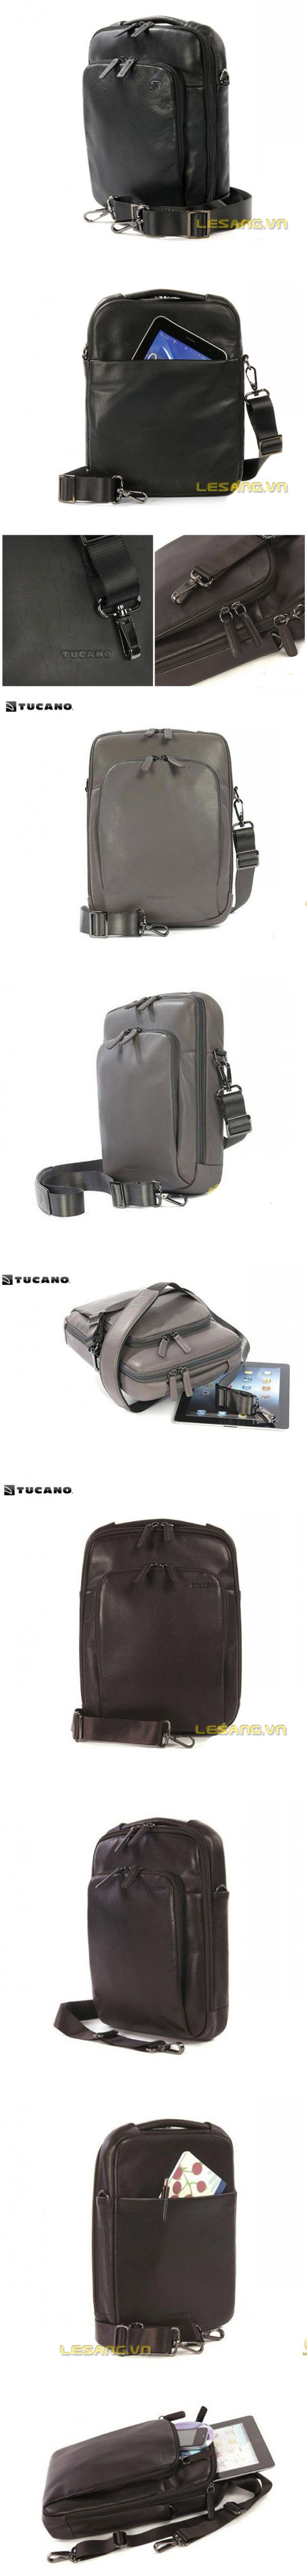 Túi đựng Ipad Tucano One Premium da thật 2546